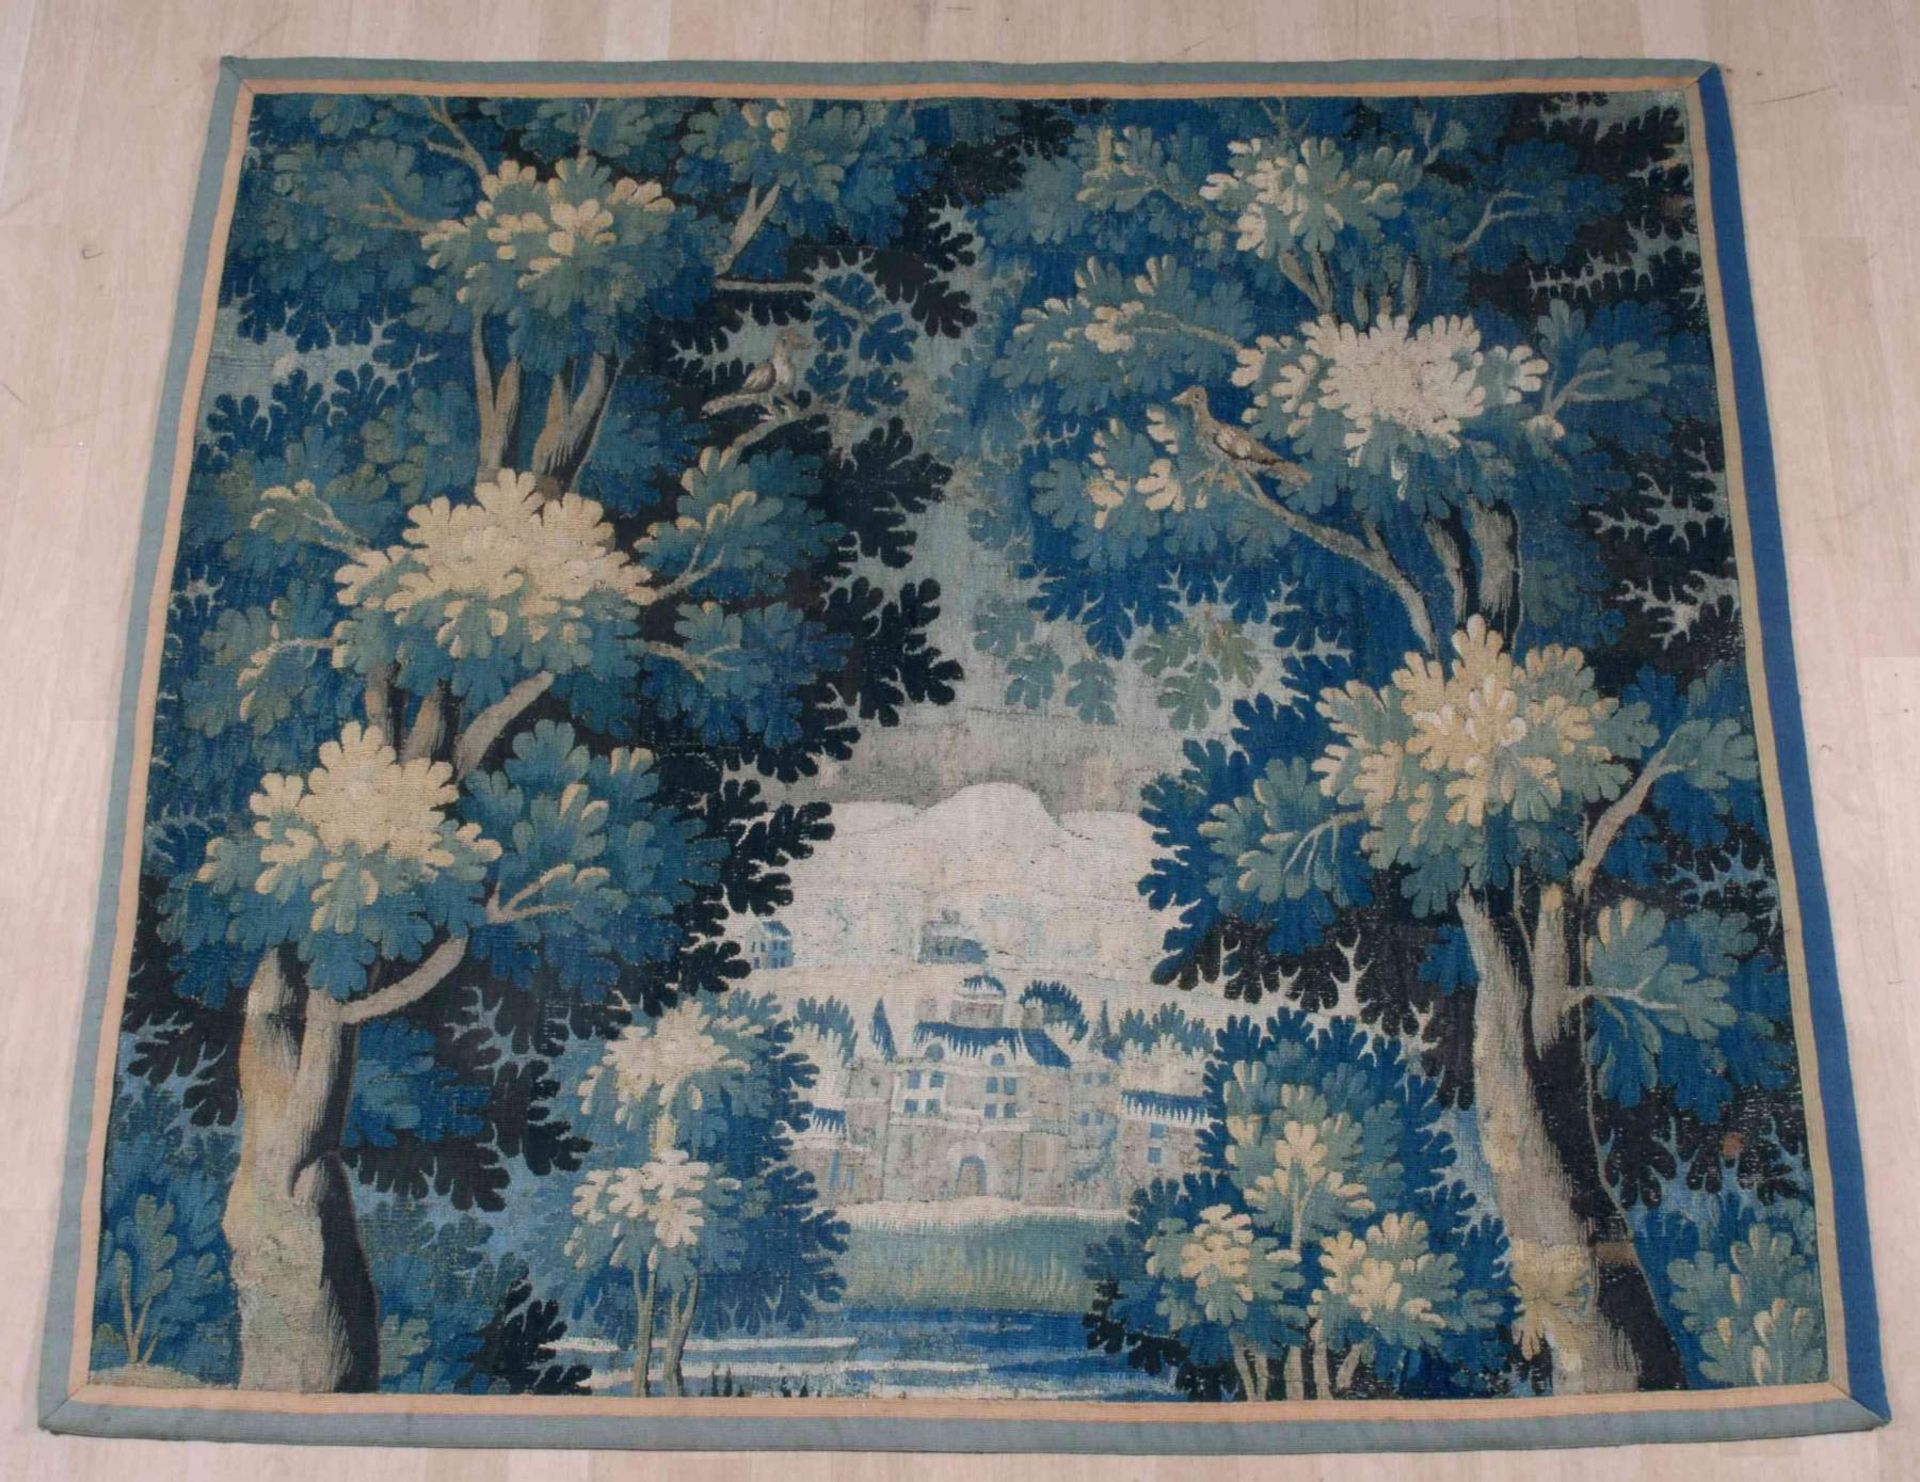 Tapisserie
Frankreich, Anfang 18.Jh. Fragment. Mit Bäumen und Pflanzen belegte Verdure, auf der